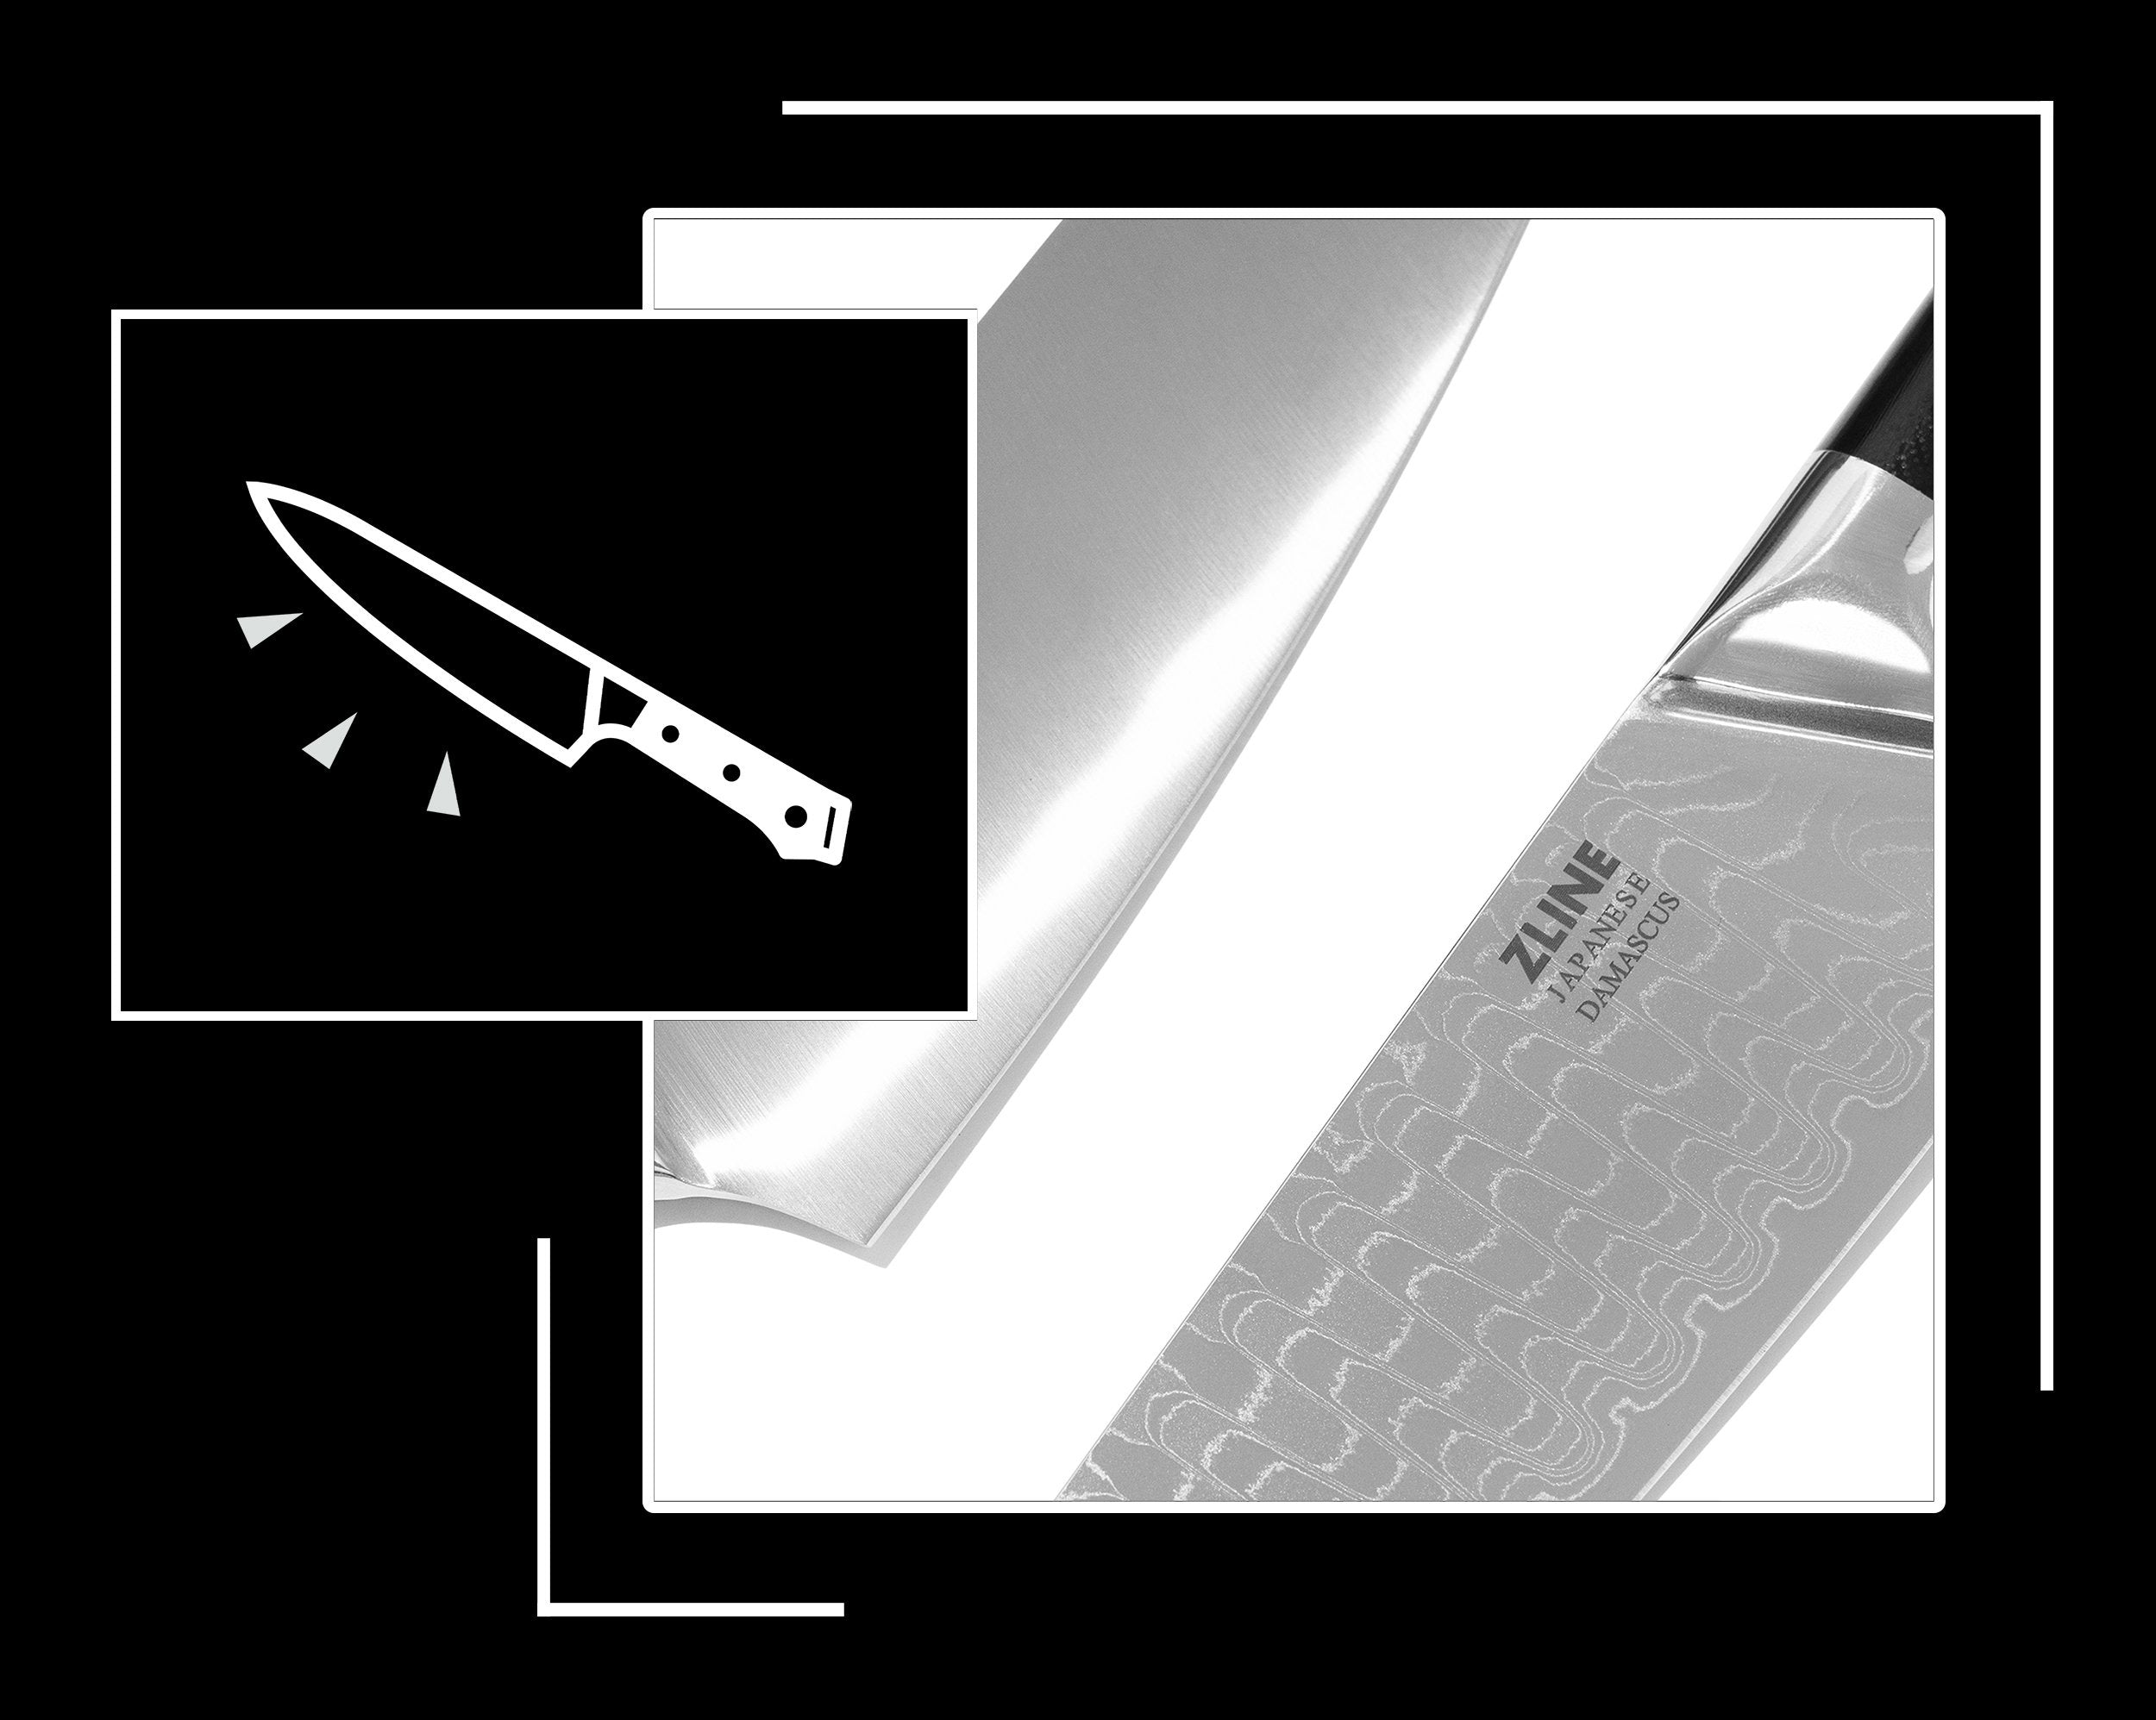 Icon and image representing precision blade